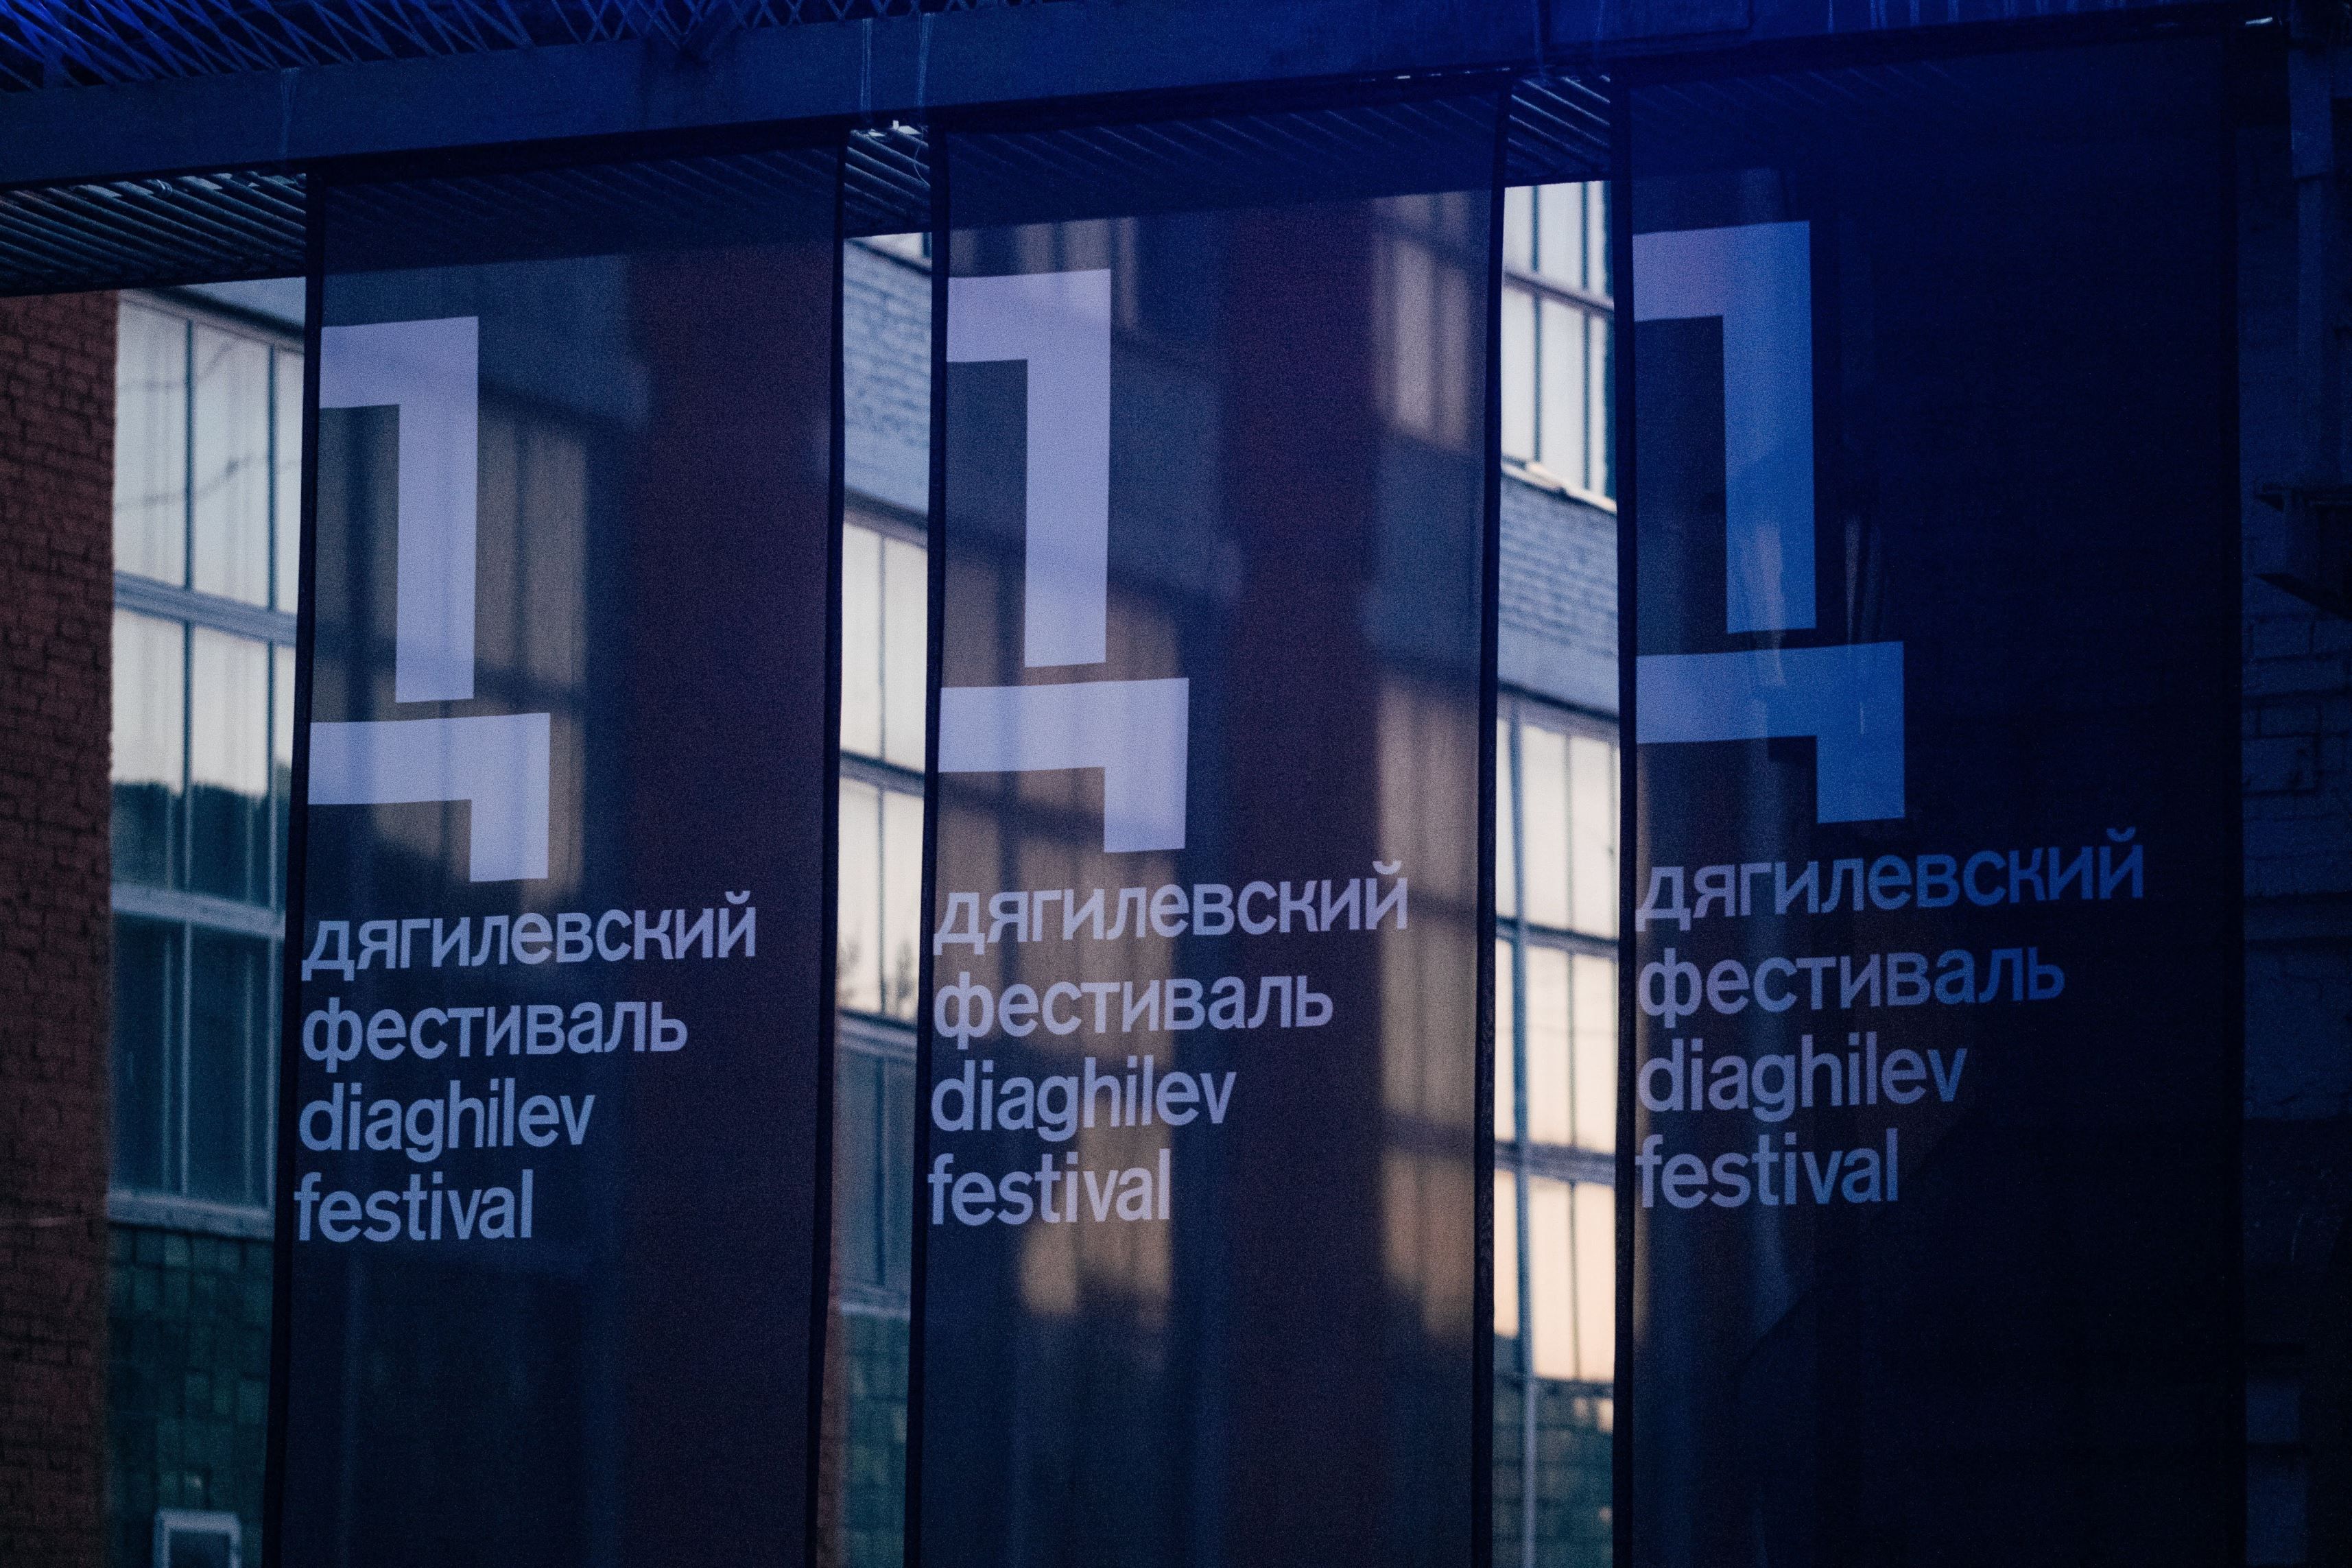 В программе Дягилевского фестиваля будет два специальных театральных проекта